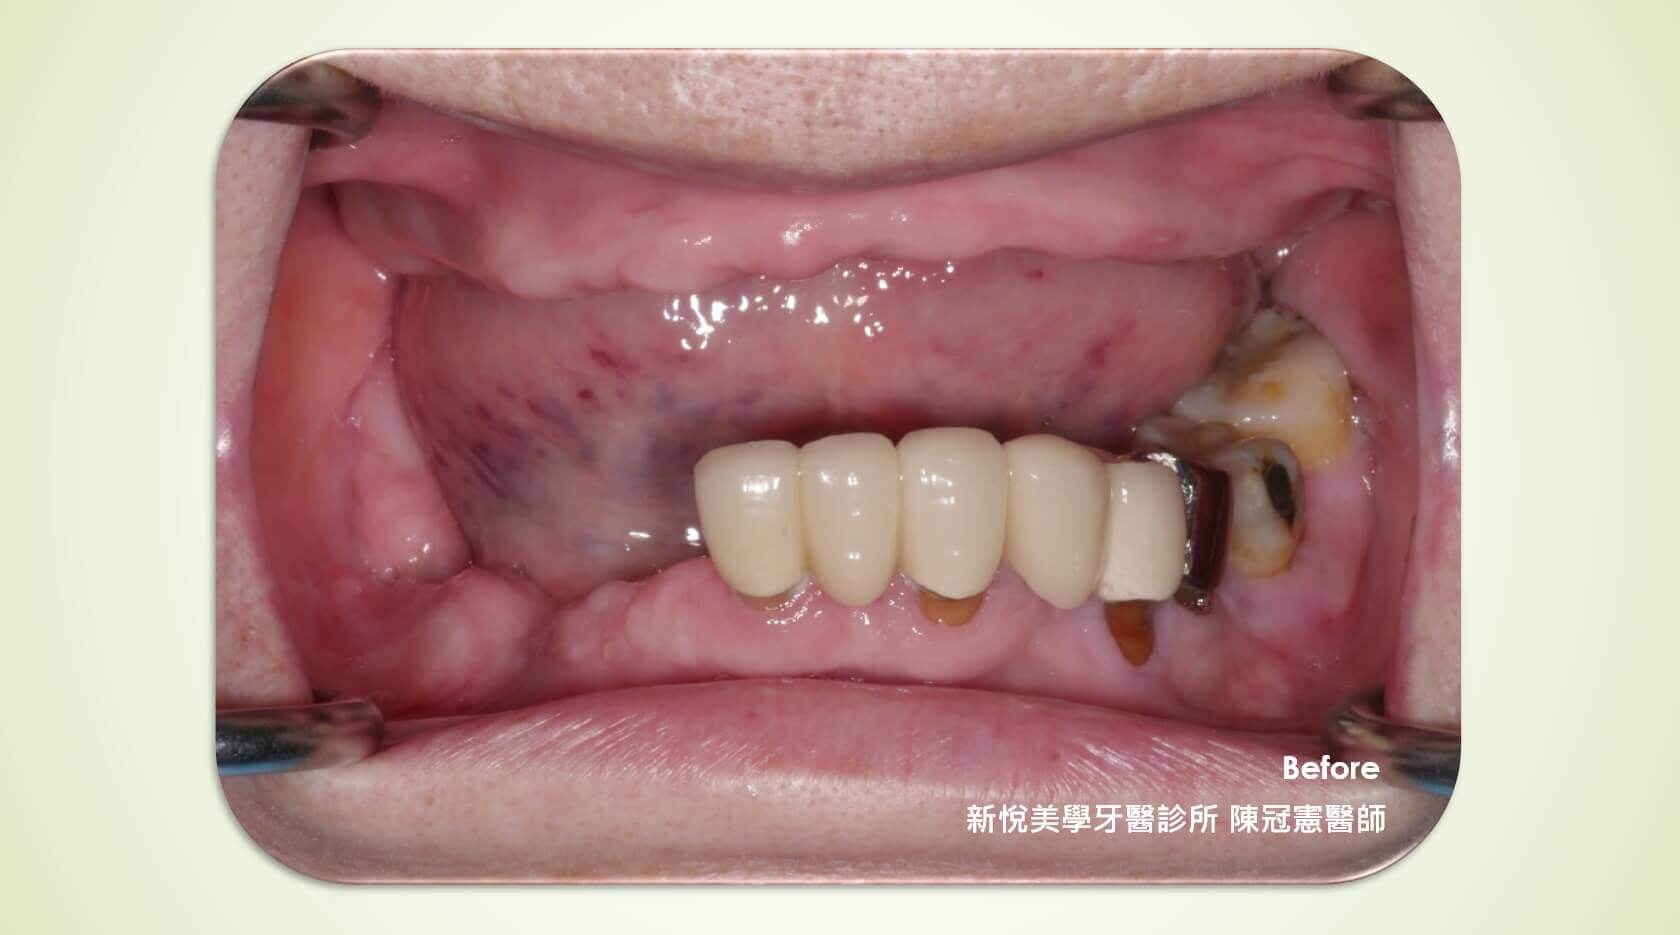 哪種情況較適合選擇活動假牙呢?的第2張圖片